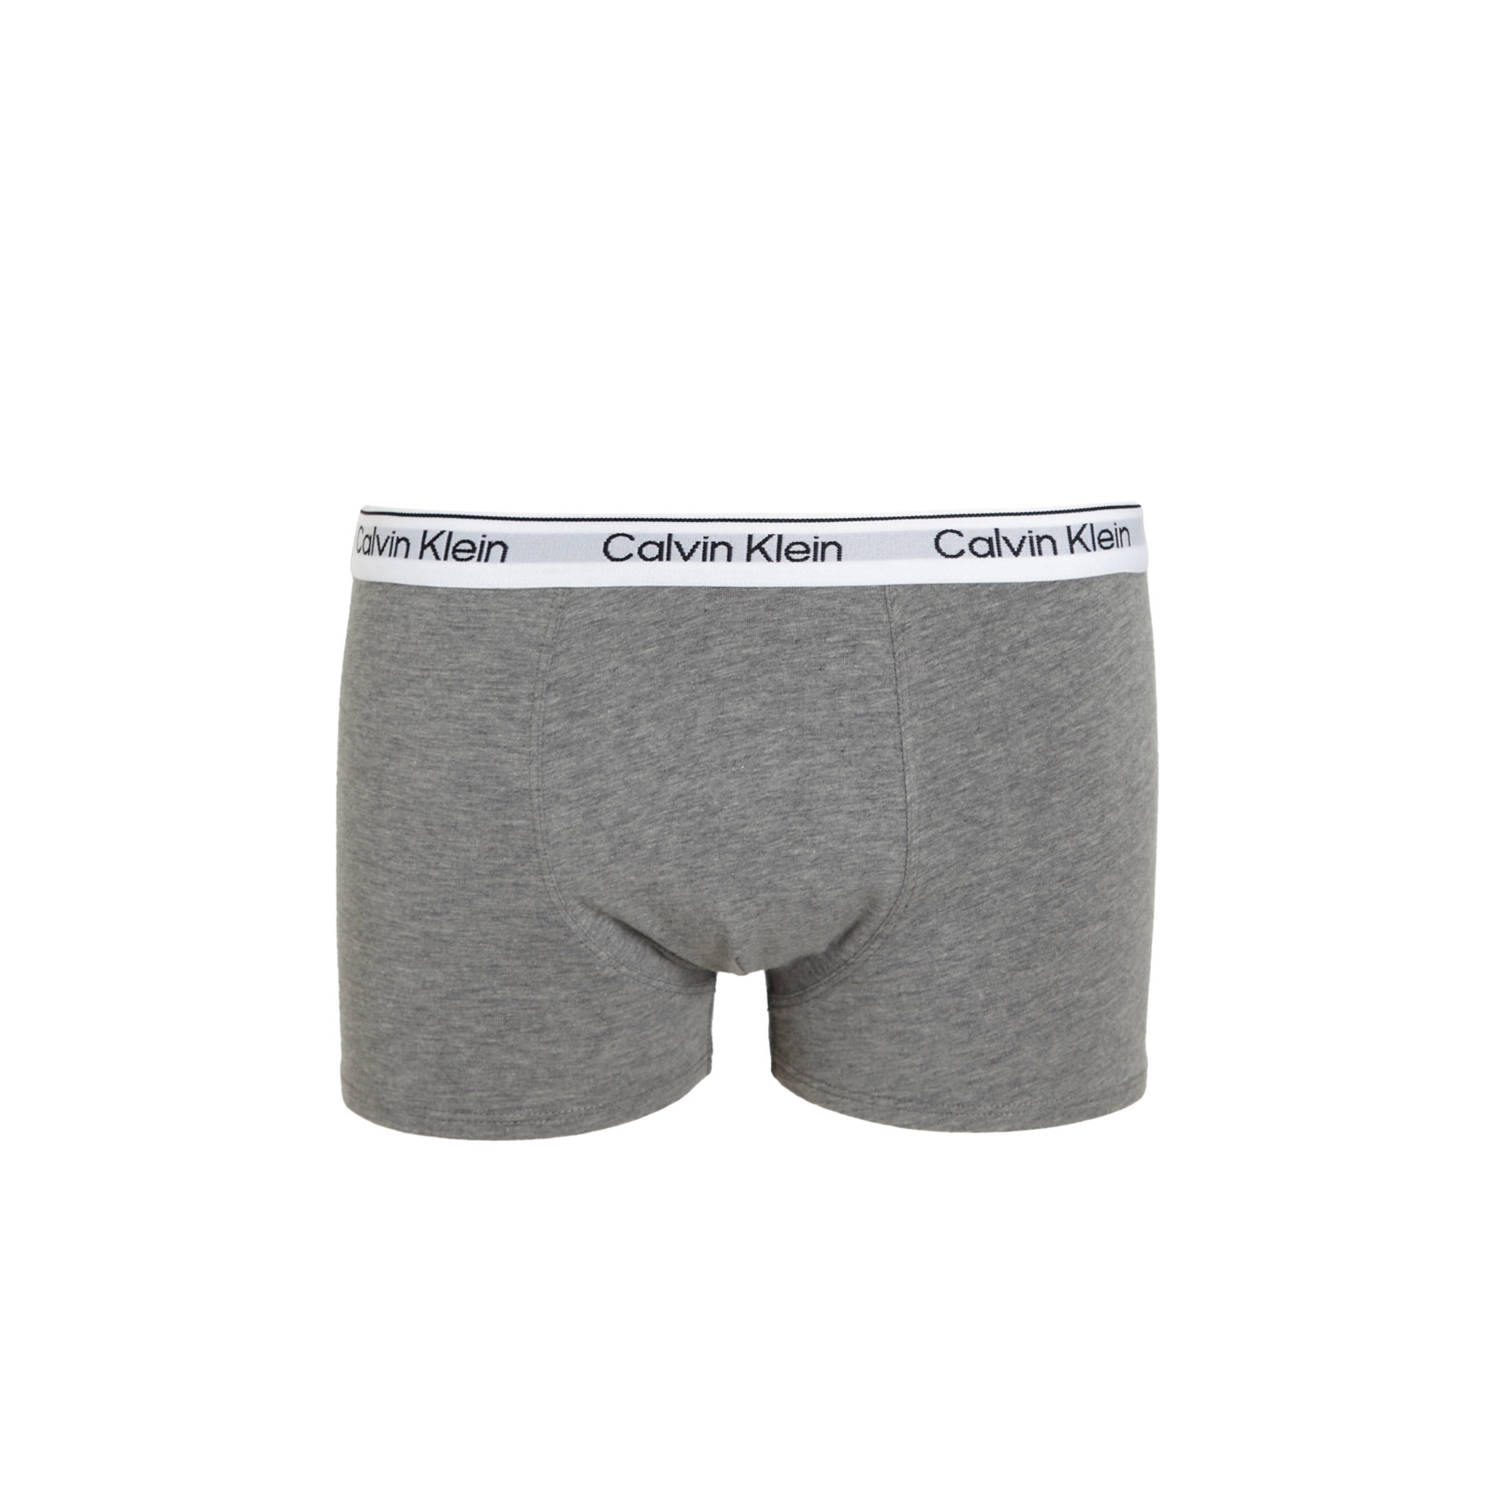 Calvin Klein boxershort set van 5 wit grijs limegroen donkergroen navy